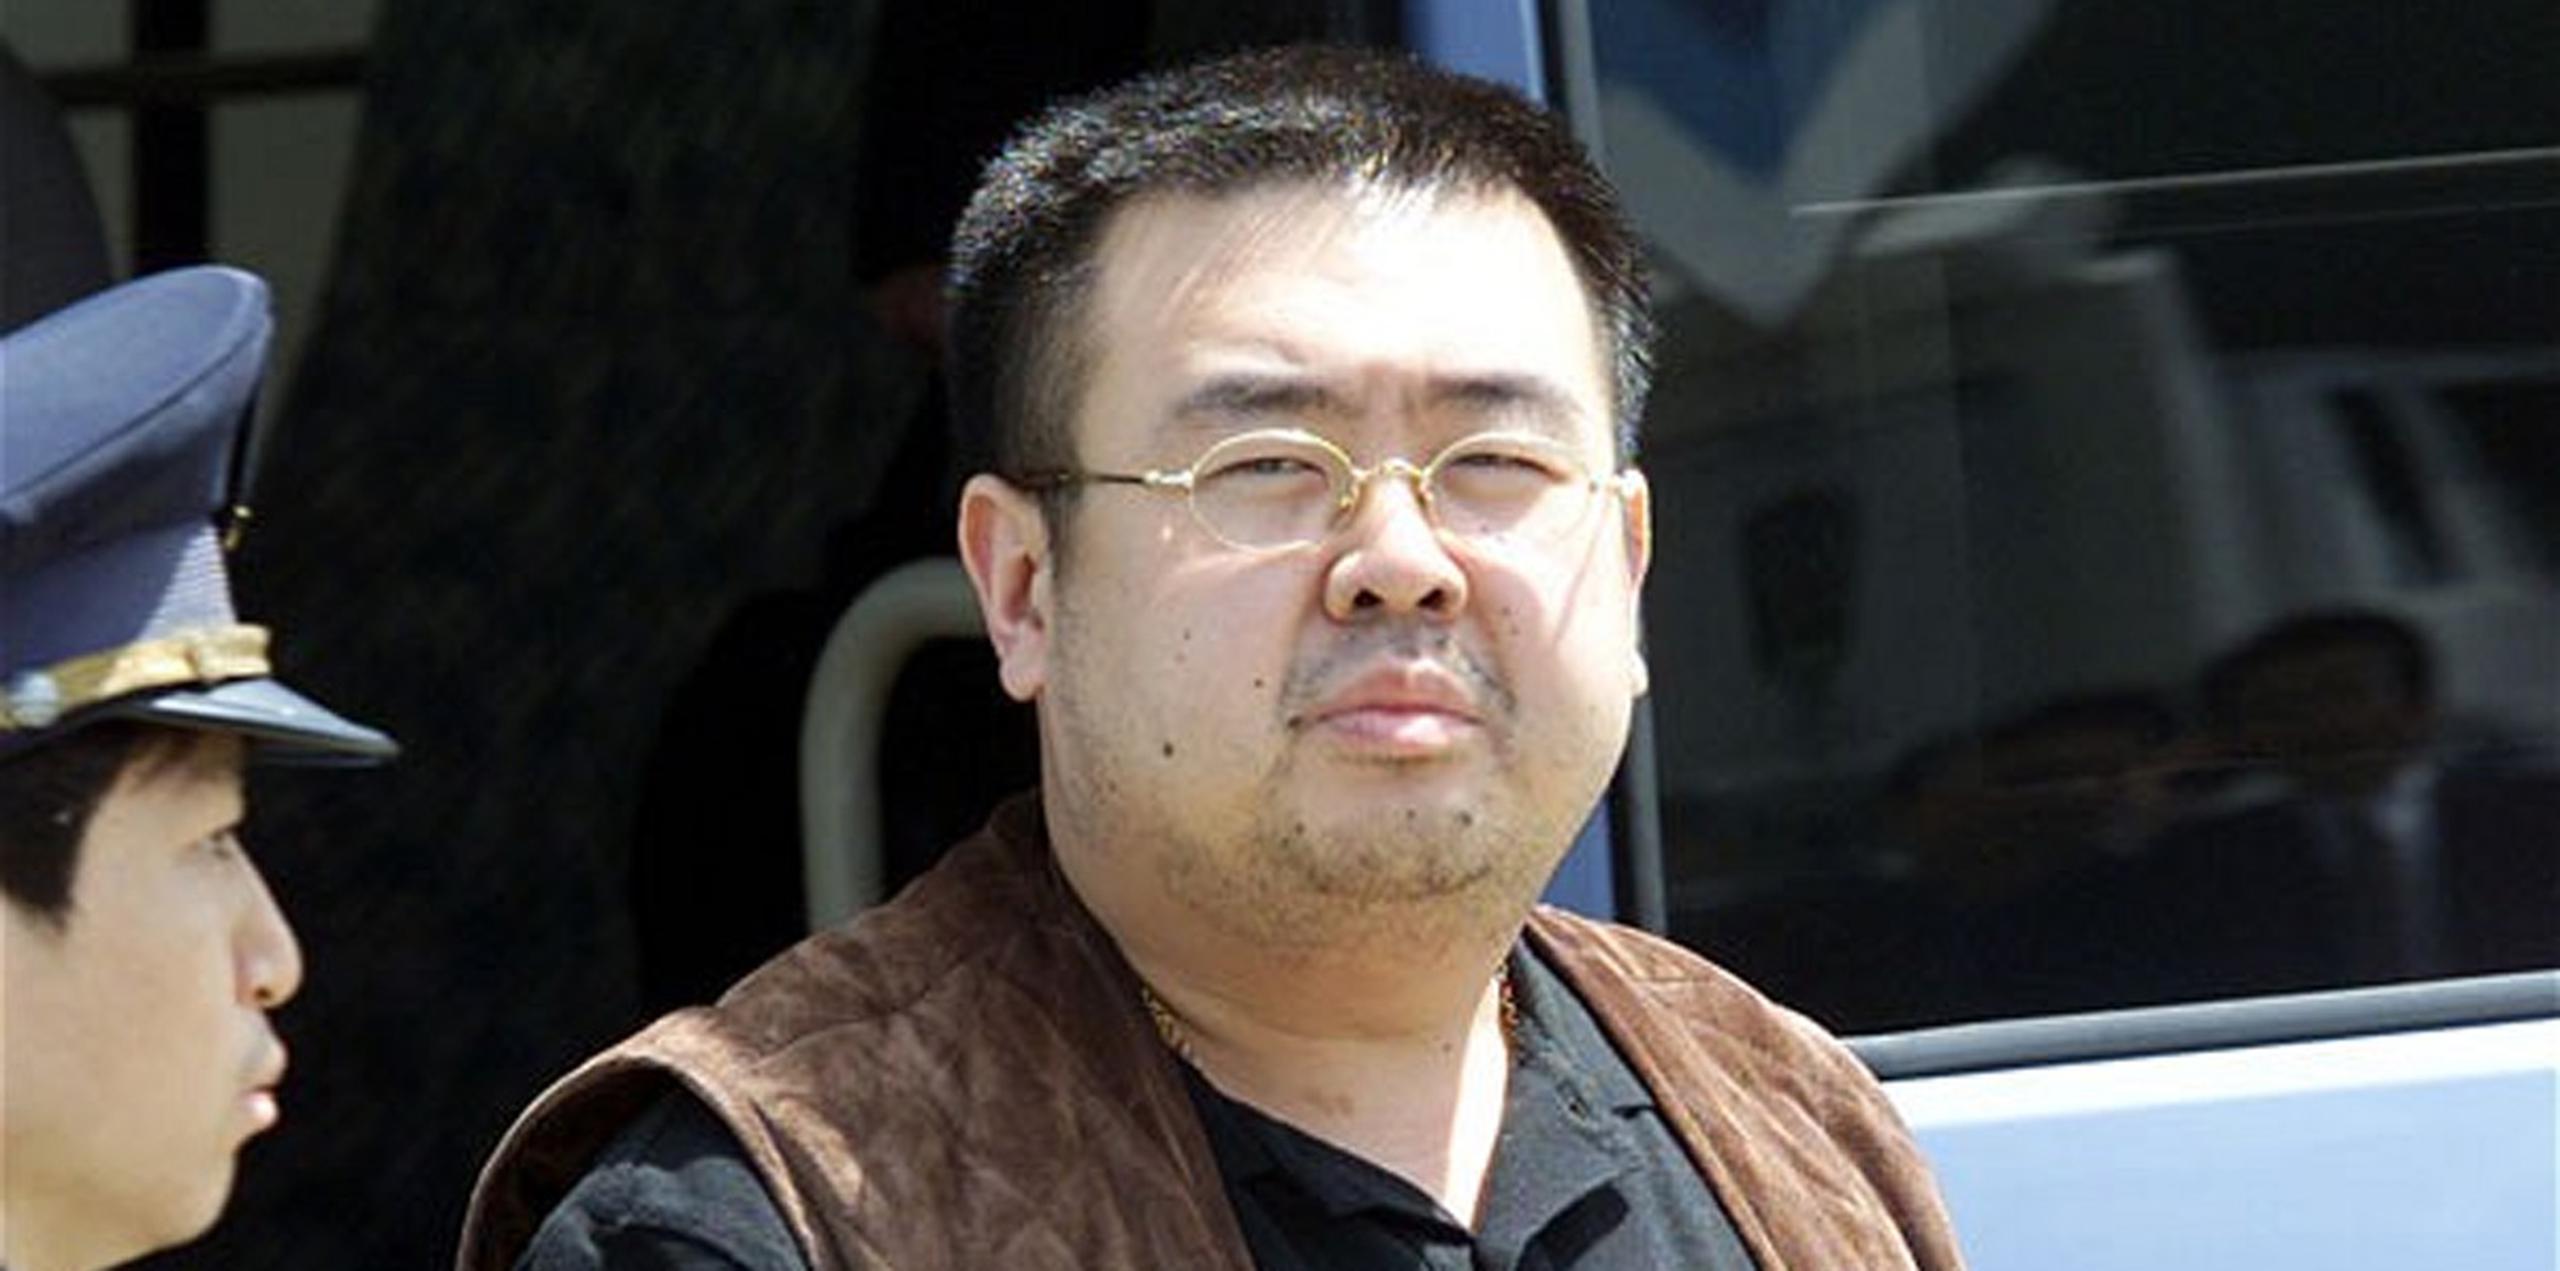 Las autoridades malasias indicaron que Kim Jong-nam murió minutos después de que dos mujeres, una indonesia y una vietnamita, le frotaran el rostro con el agente VX, según determinó una autopsia preliminar, mientras hacía cola para embarcar en un vuelo a Macao. (AP)